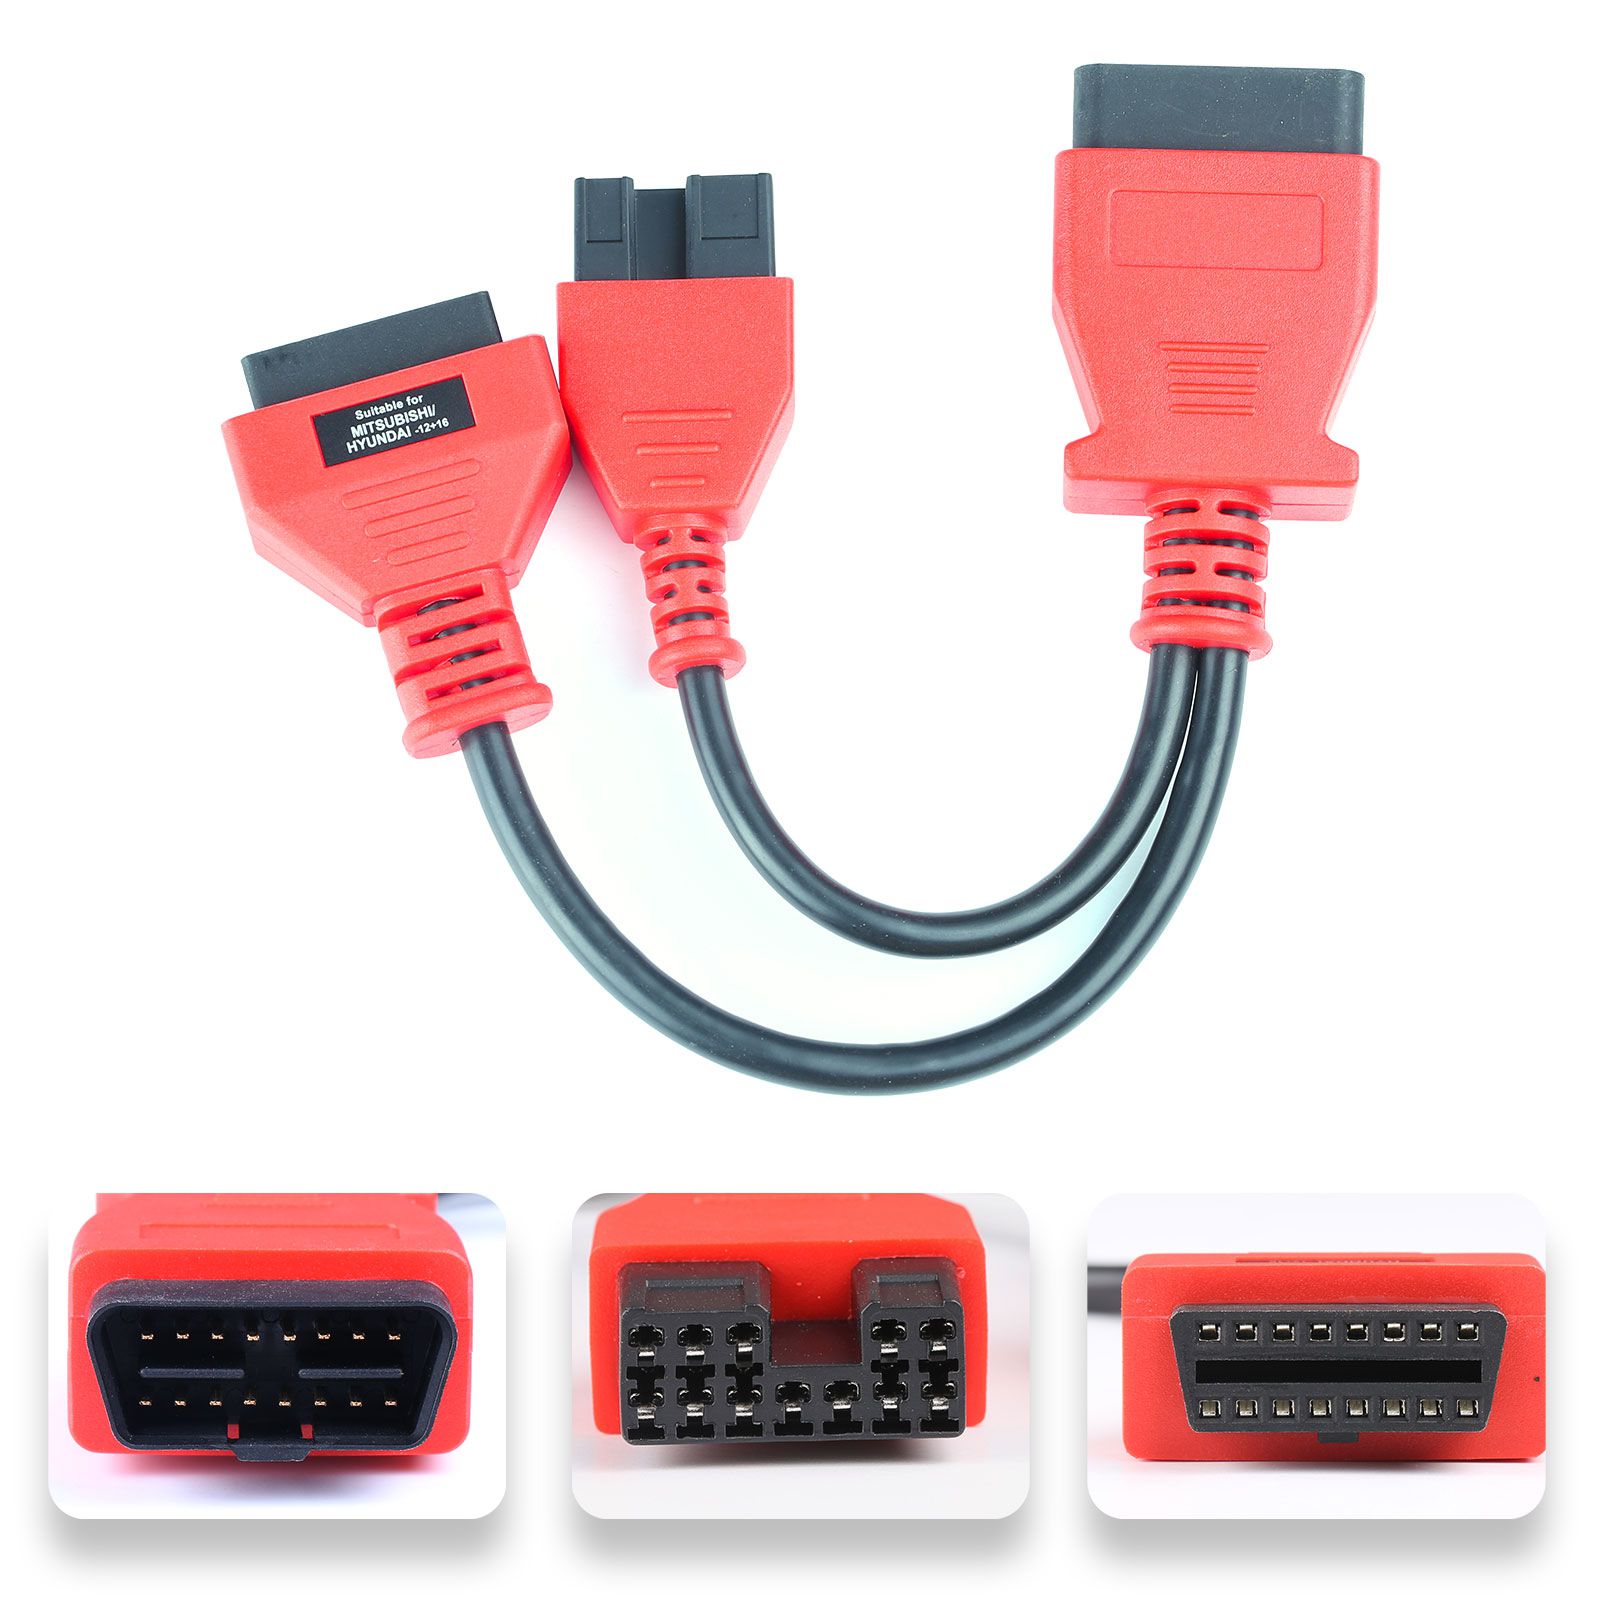 DS808/MK808/MP808용 Autel 전체 OBDII 케이블 및 커넥터 키트(케이블 및 커넥터만 해당)